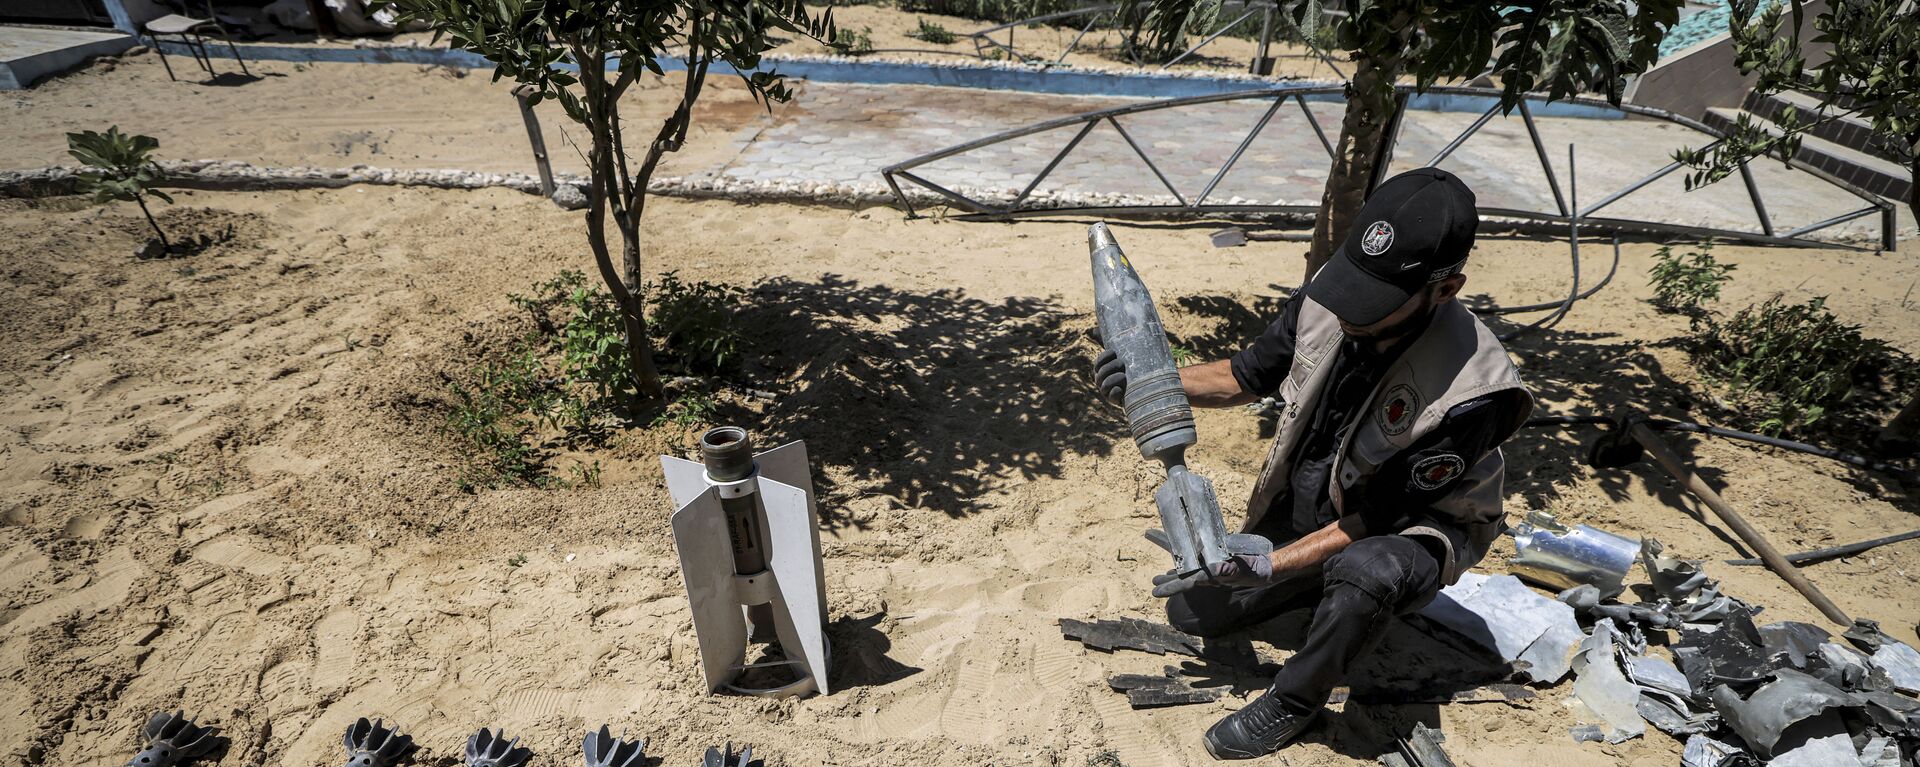 خبراء المتفجرات من حماس يقومون بإزالة قنابل وصواريخ قوات الطيران الحربي التي لم تنفجر في خان يونس، بعد تبادل إطلاق النار بين قطاع غزة وإسرائيل في مايو الماضي، 5 يونيو 2021 - سبوتنيك عربي, 1920, 04.06.2022